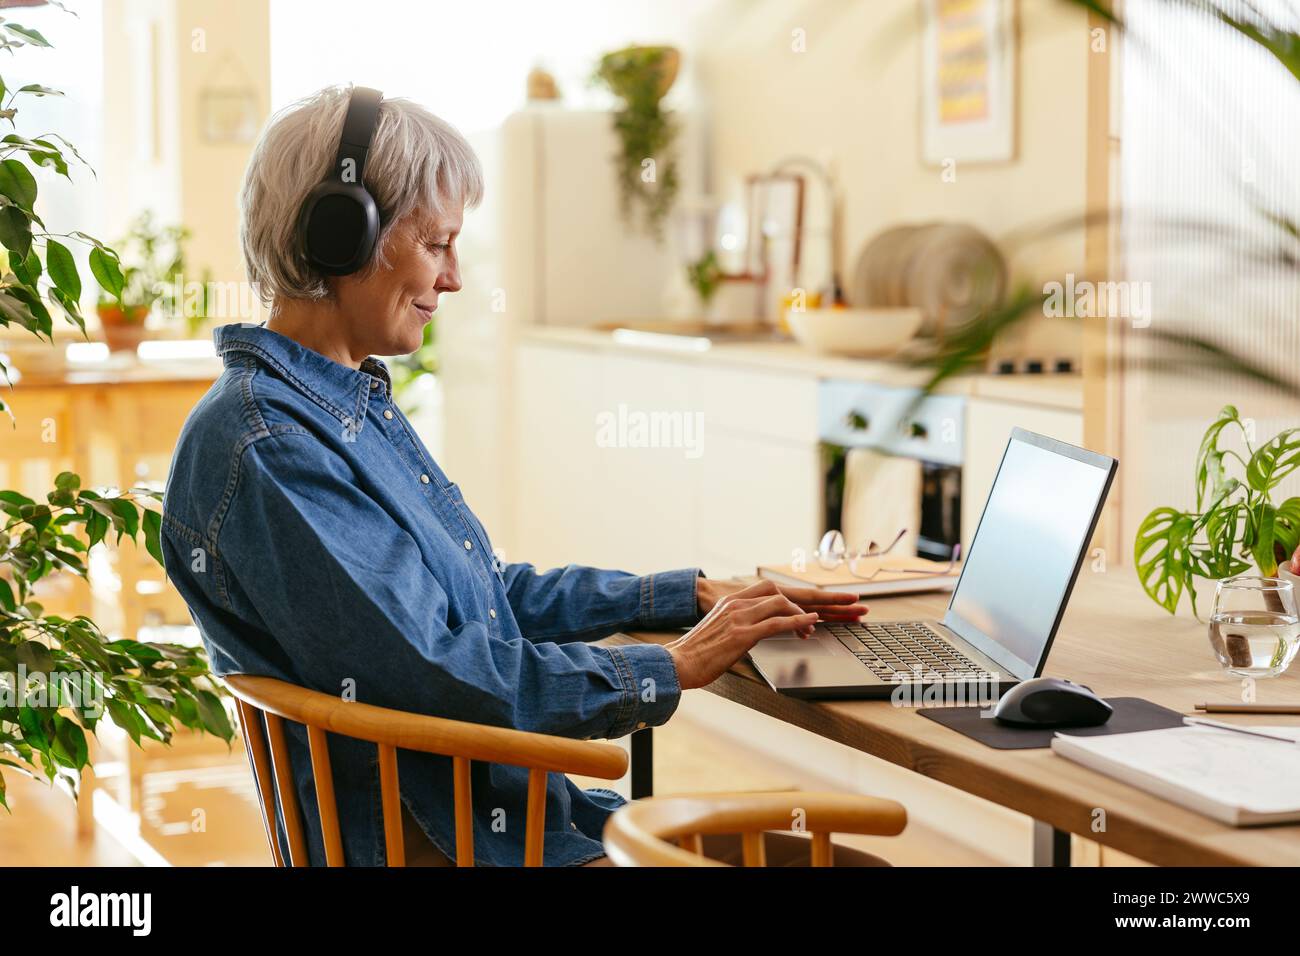 Lächelnder Freelancer, der kabellose Kopfhörer trägt und im Home Office an einem Laptop arbeitet Stockfoto